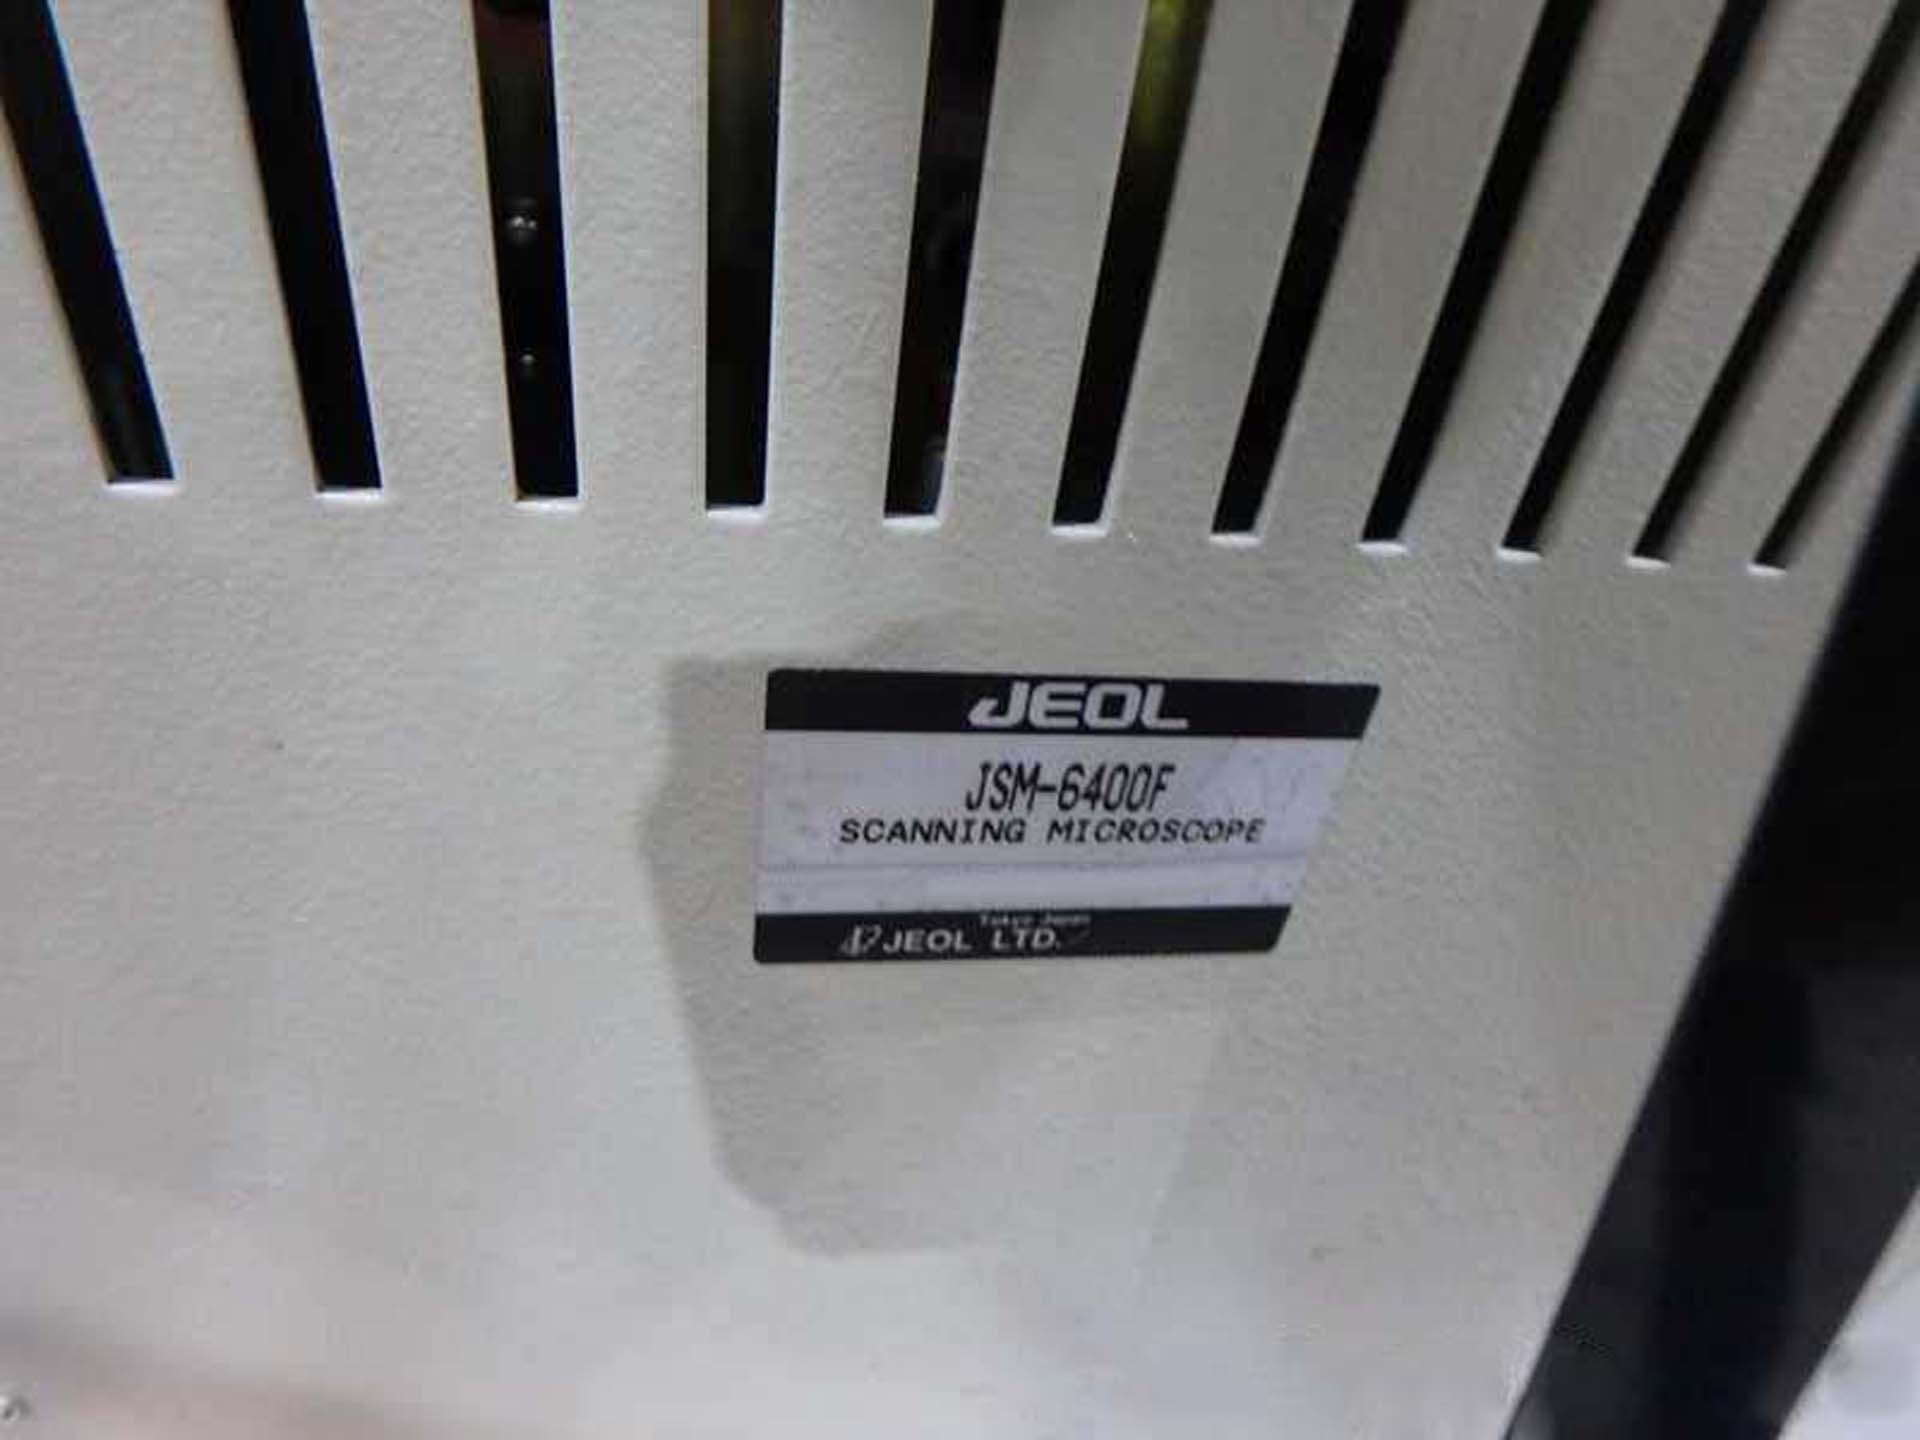 圖為 已使用的 JEOL JSM 6400F 待售